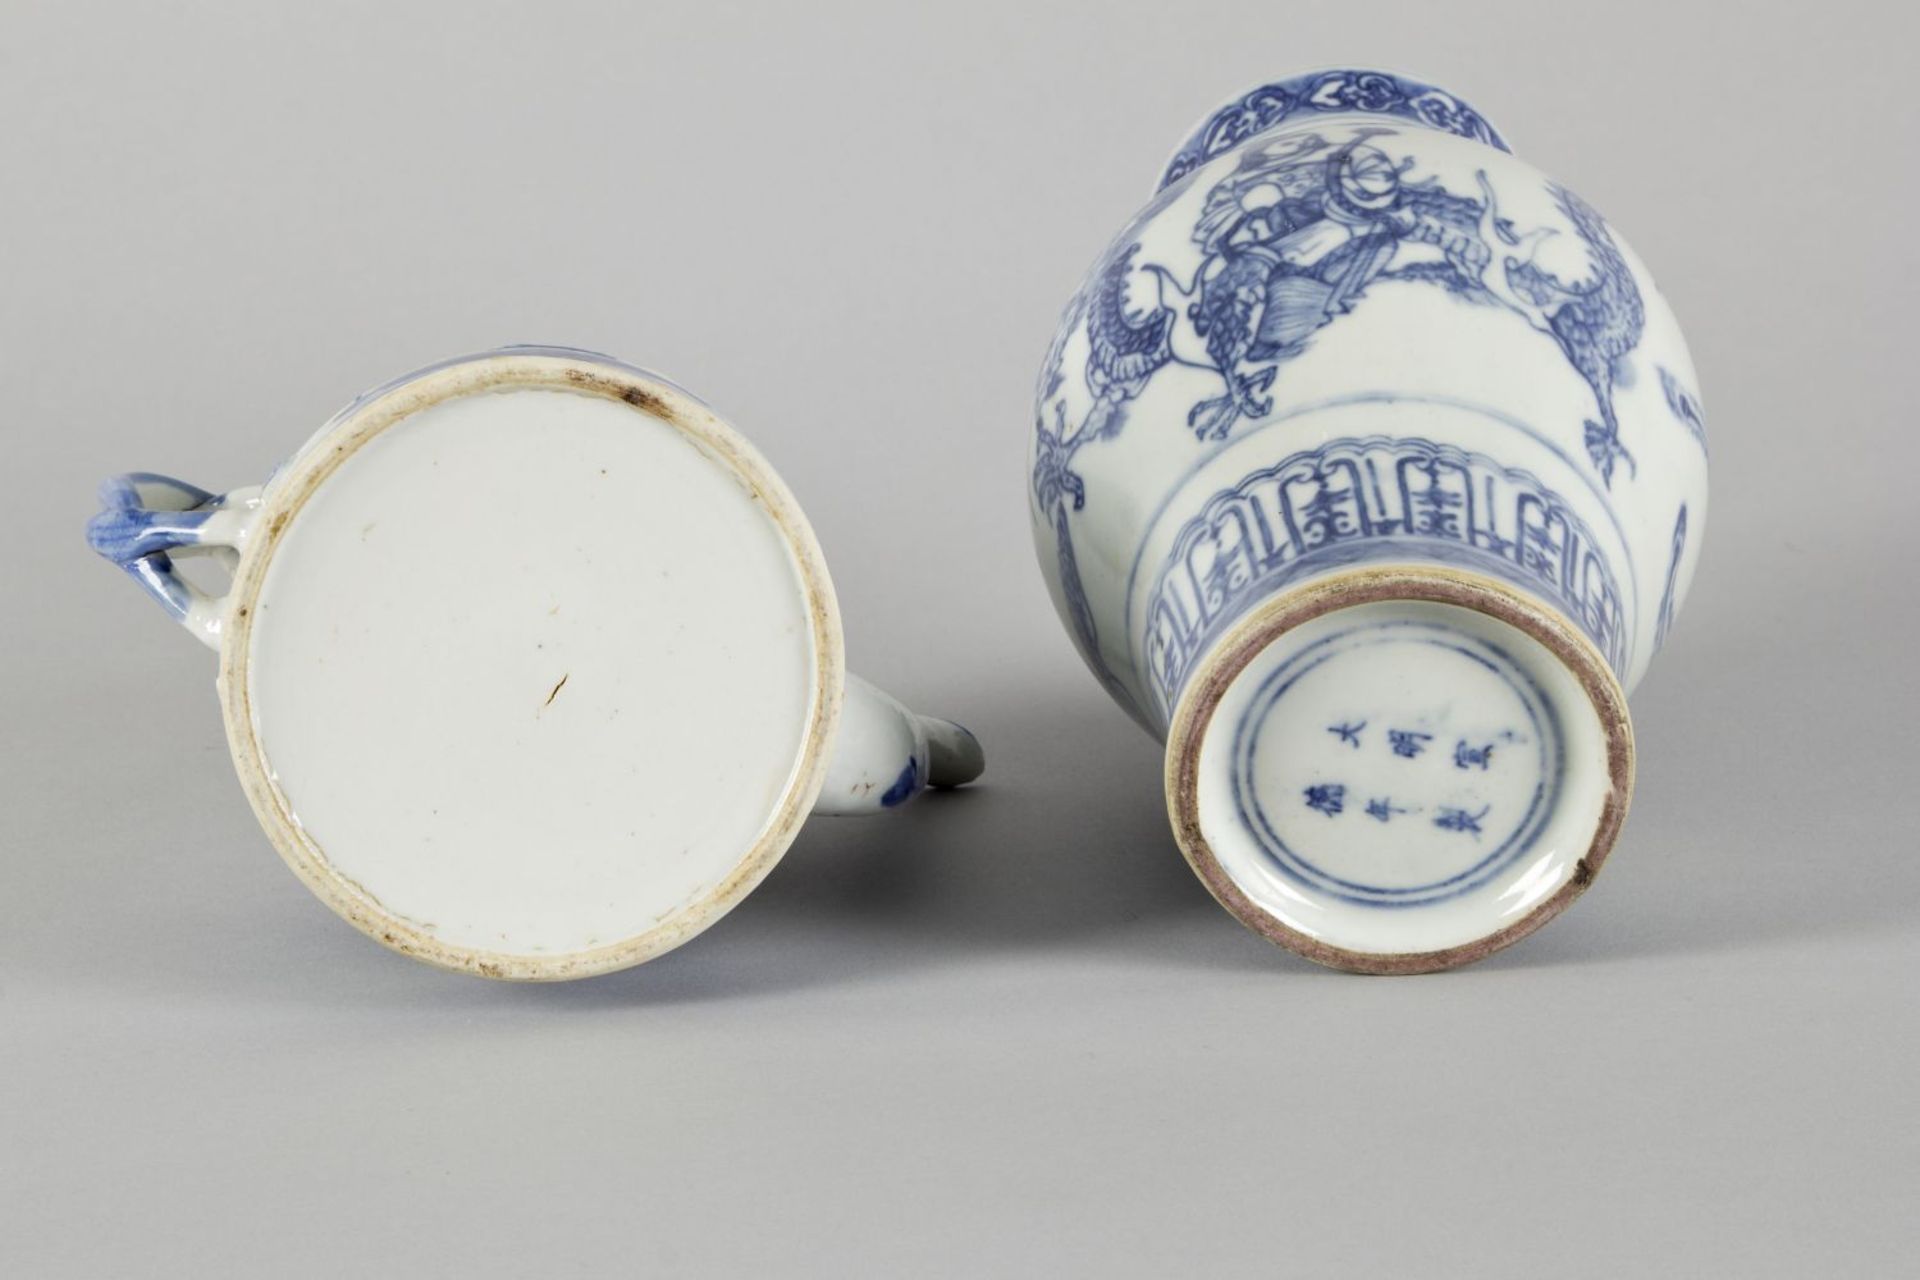 Vase und TeekannePorzellan. Versch. blaue Dekore u.a. auf Drachen bzw. Phönix reitende Personen. - Bild 3 aus 3